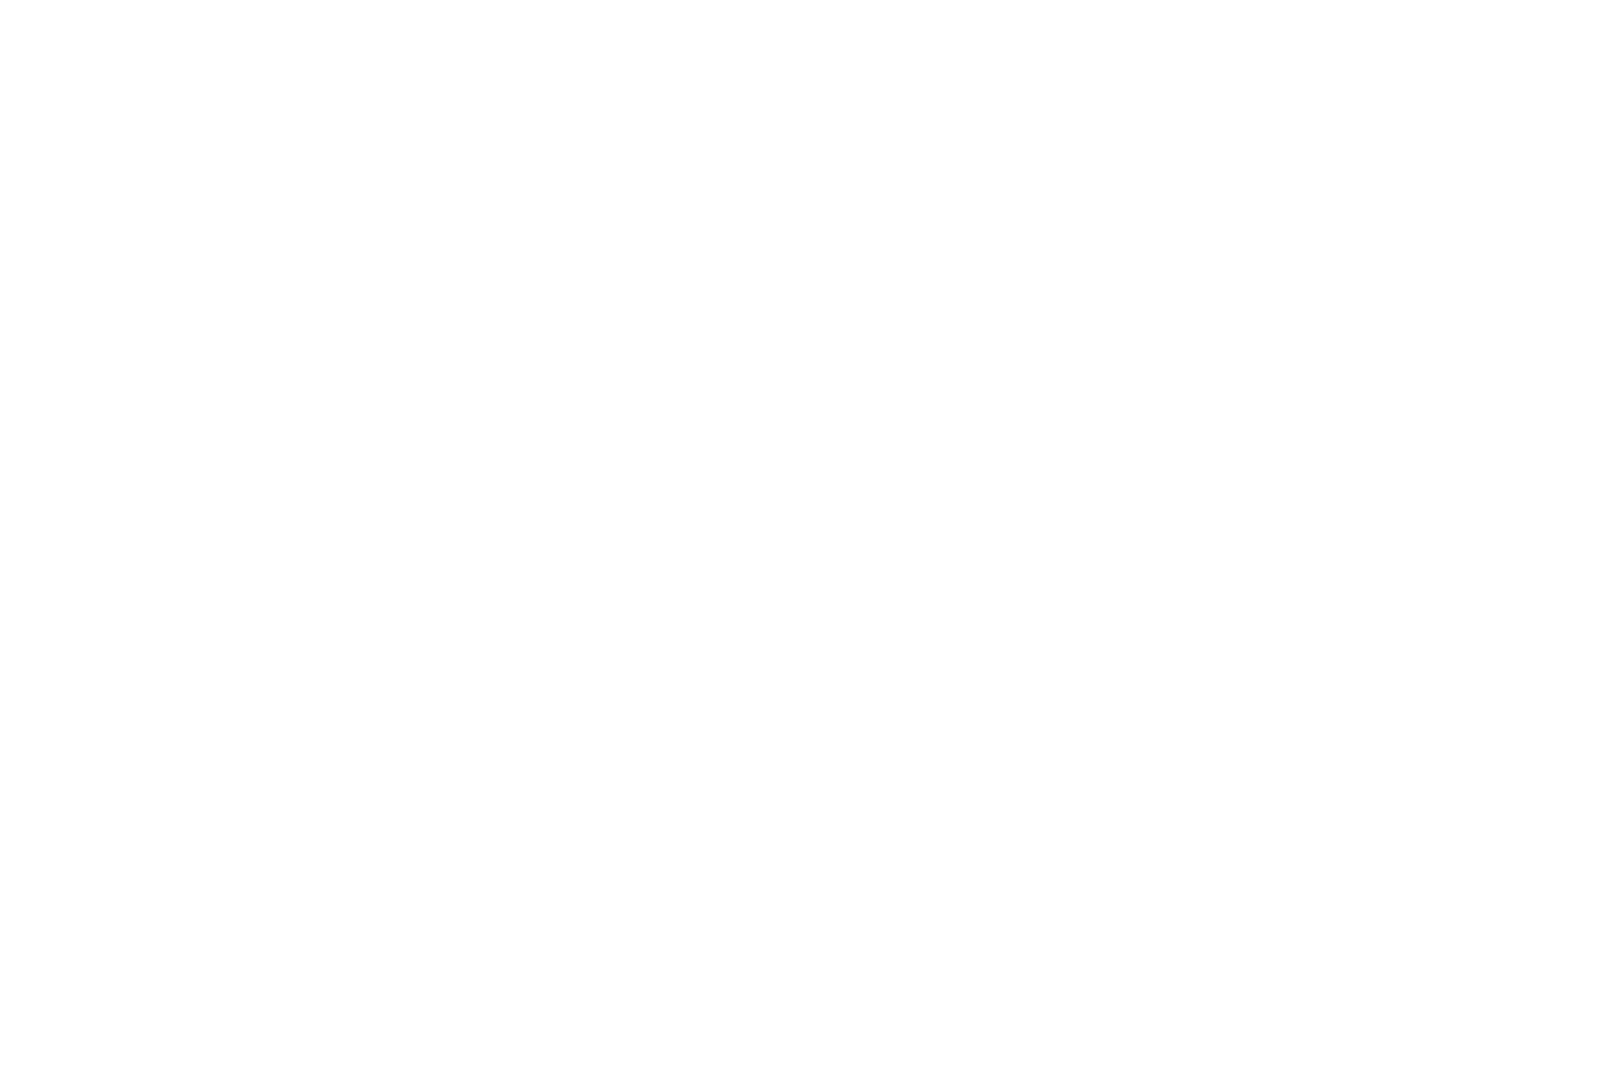 Salt 106.5